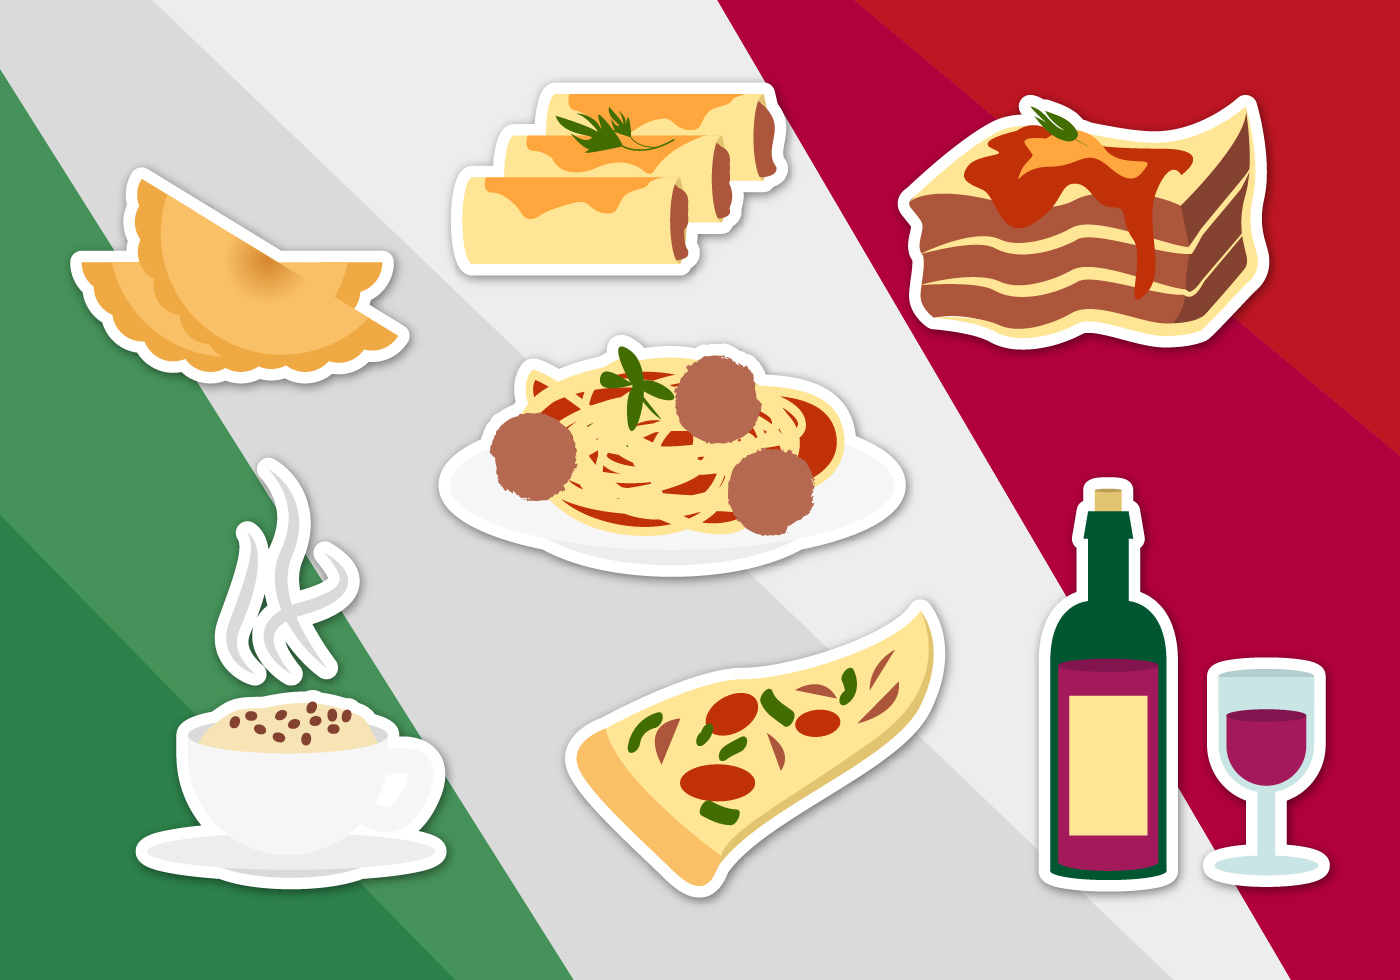  Italian Food Illustrations Vector Download Free Vectors 